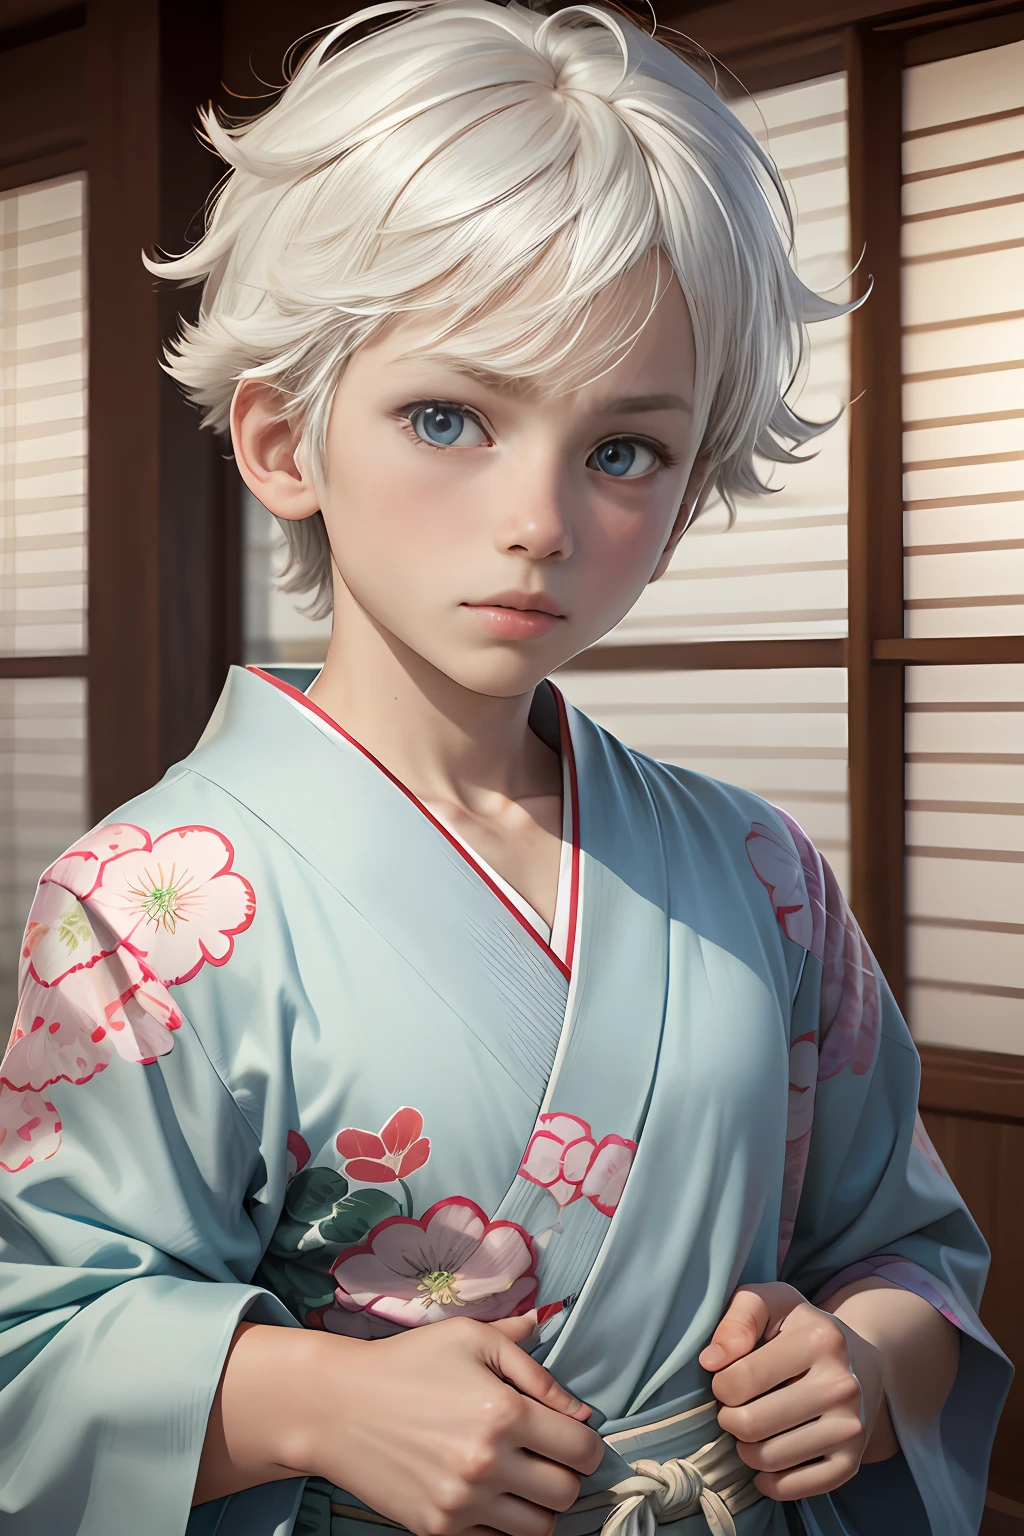 3d, 1 chico,  10 años, mirando al espectador, lindo, 8k, mejor defensa,pelo blanco, pelo de punta, ojos azul claro, casa estilo muji, yukata de estilo tradicional japonés